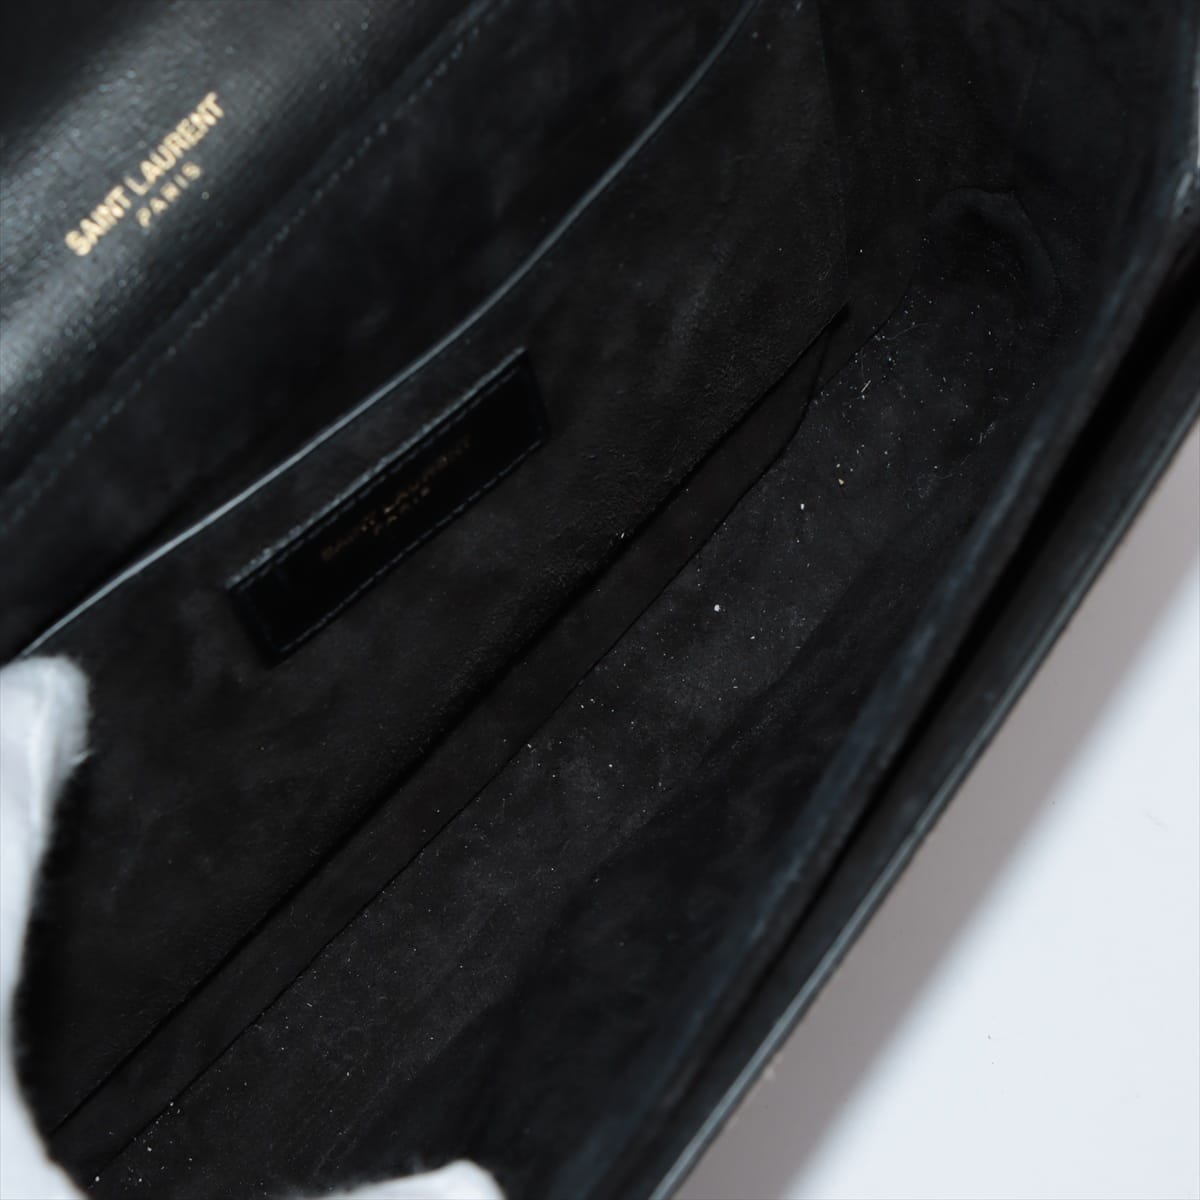 Saint Laurent Paris Bellechasse Leather & suede Shoulder bag black x beige 482044